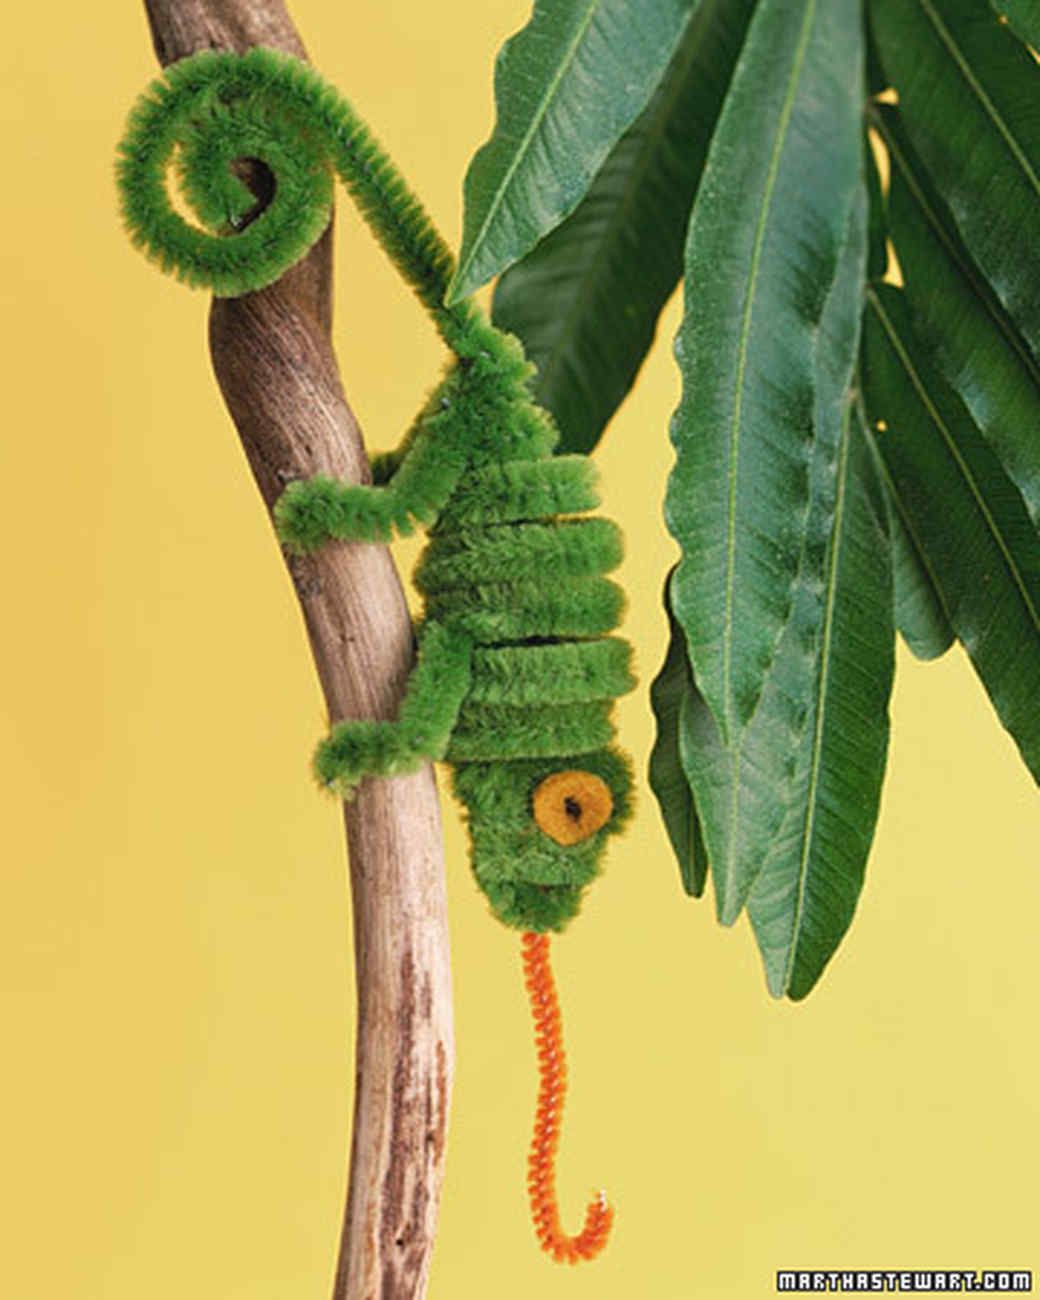 Chameleon Pipe Cleaner Creature | Martha Stewart